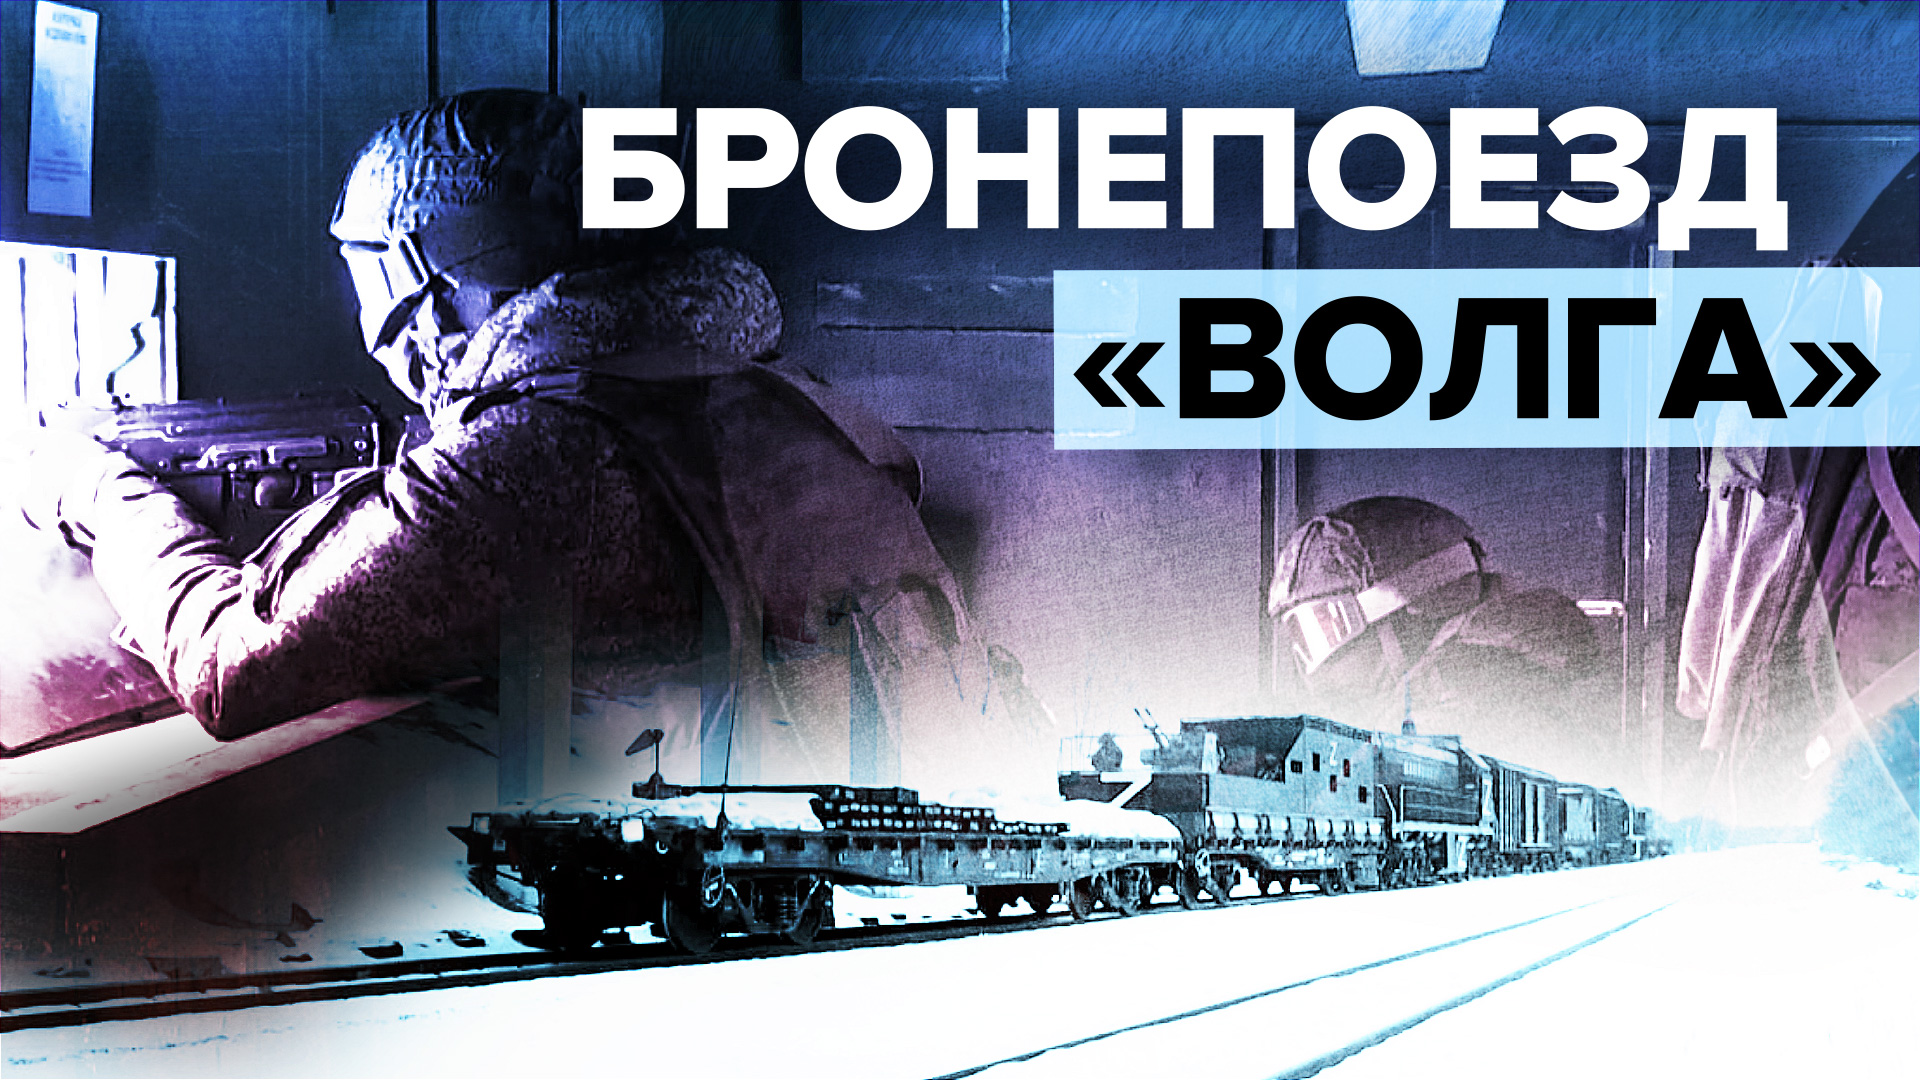 Как используется бронепоезд «Волга» в зоне спецоперации — видео